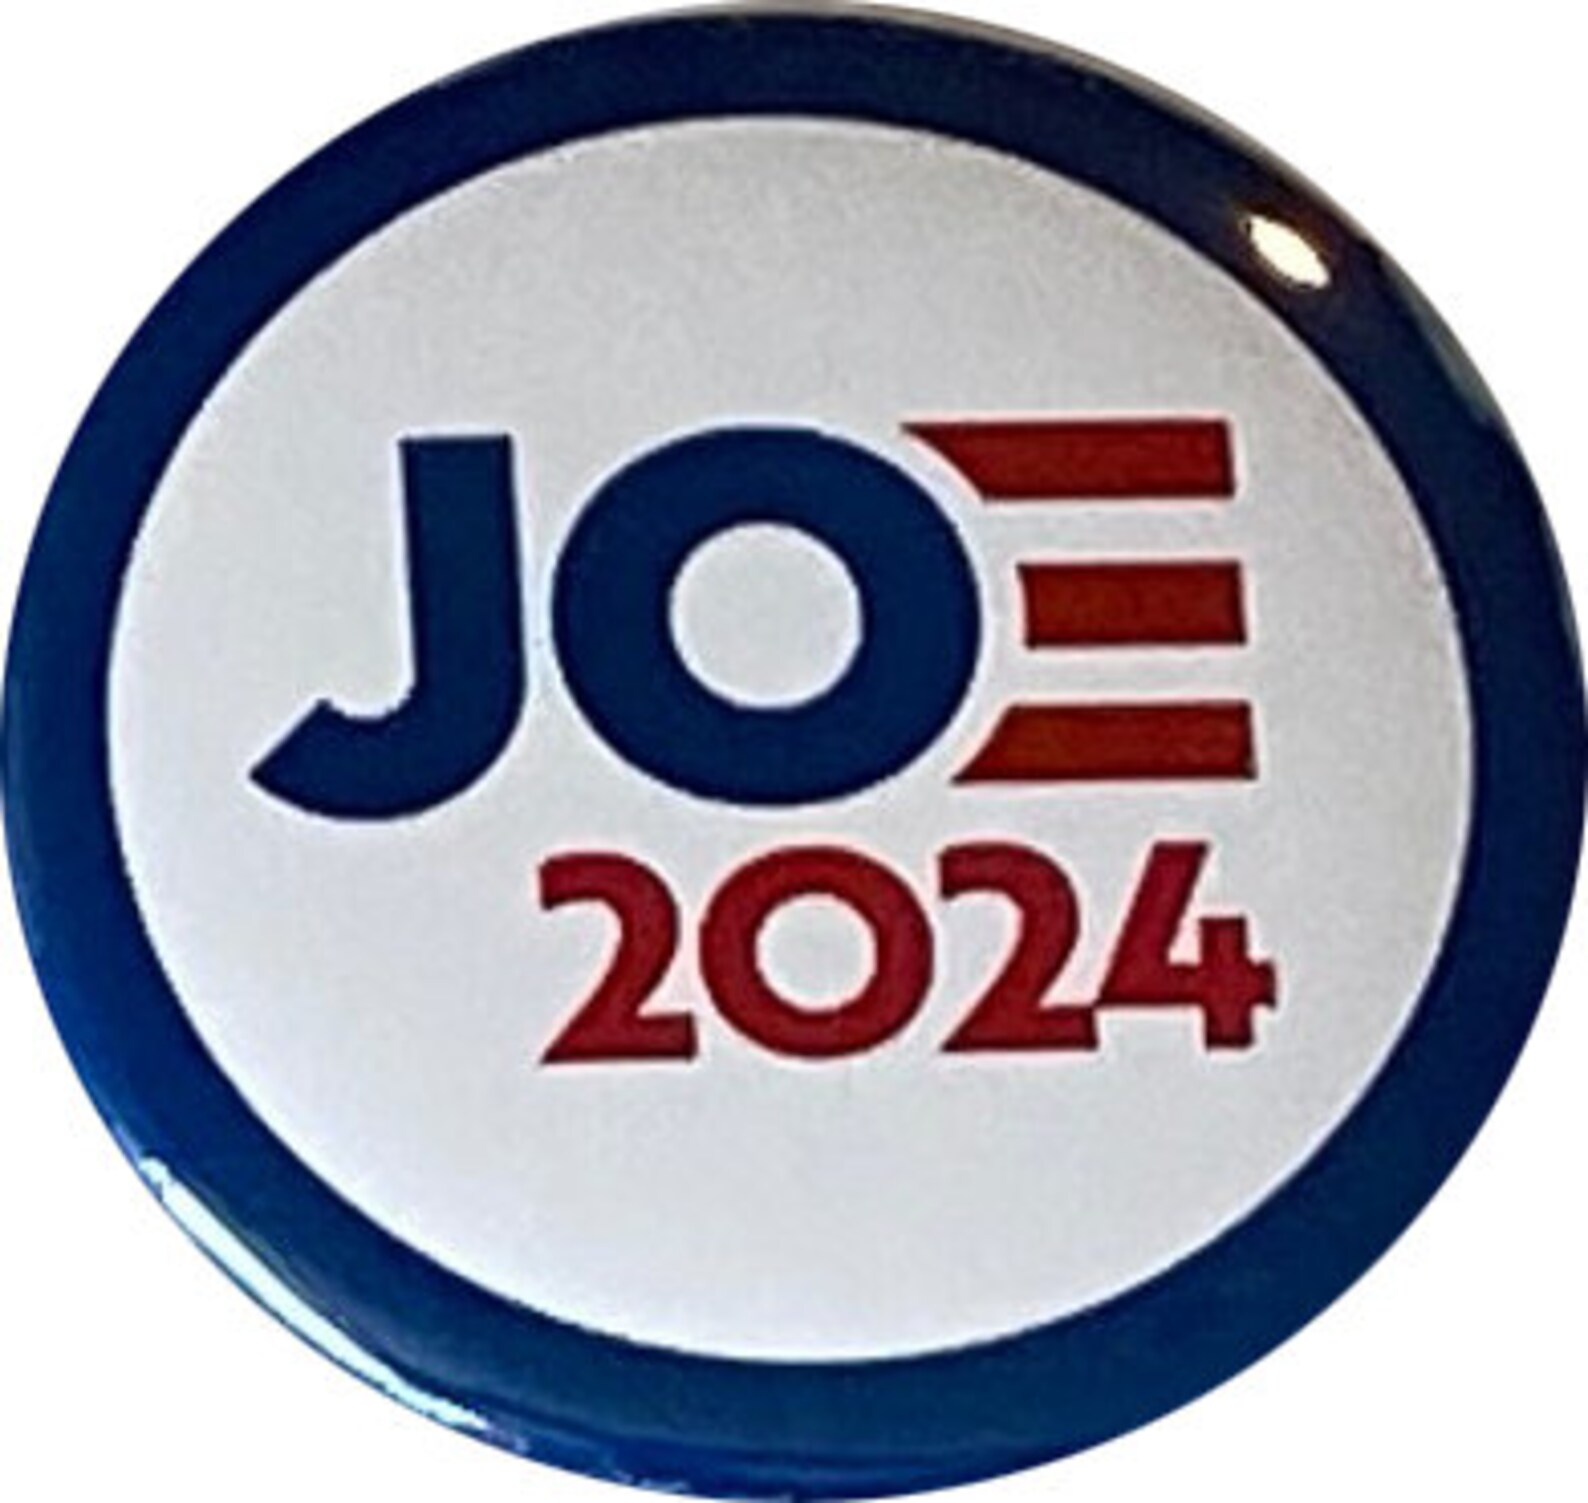 Joe Biden 2024 Buttons Reelect Joe Biden for President Set of 8 Pins 2